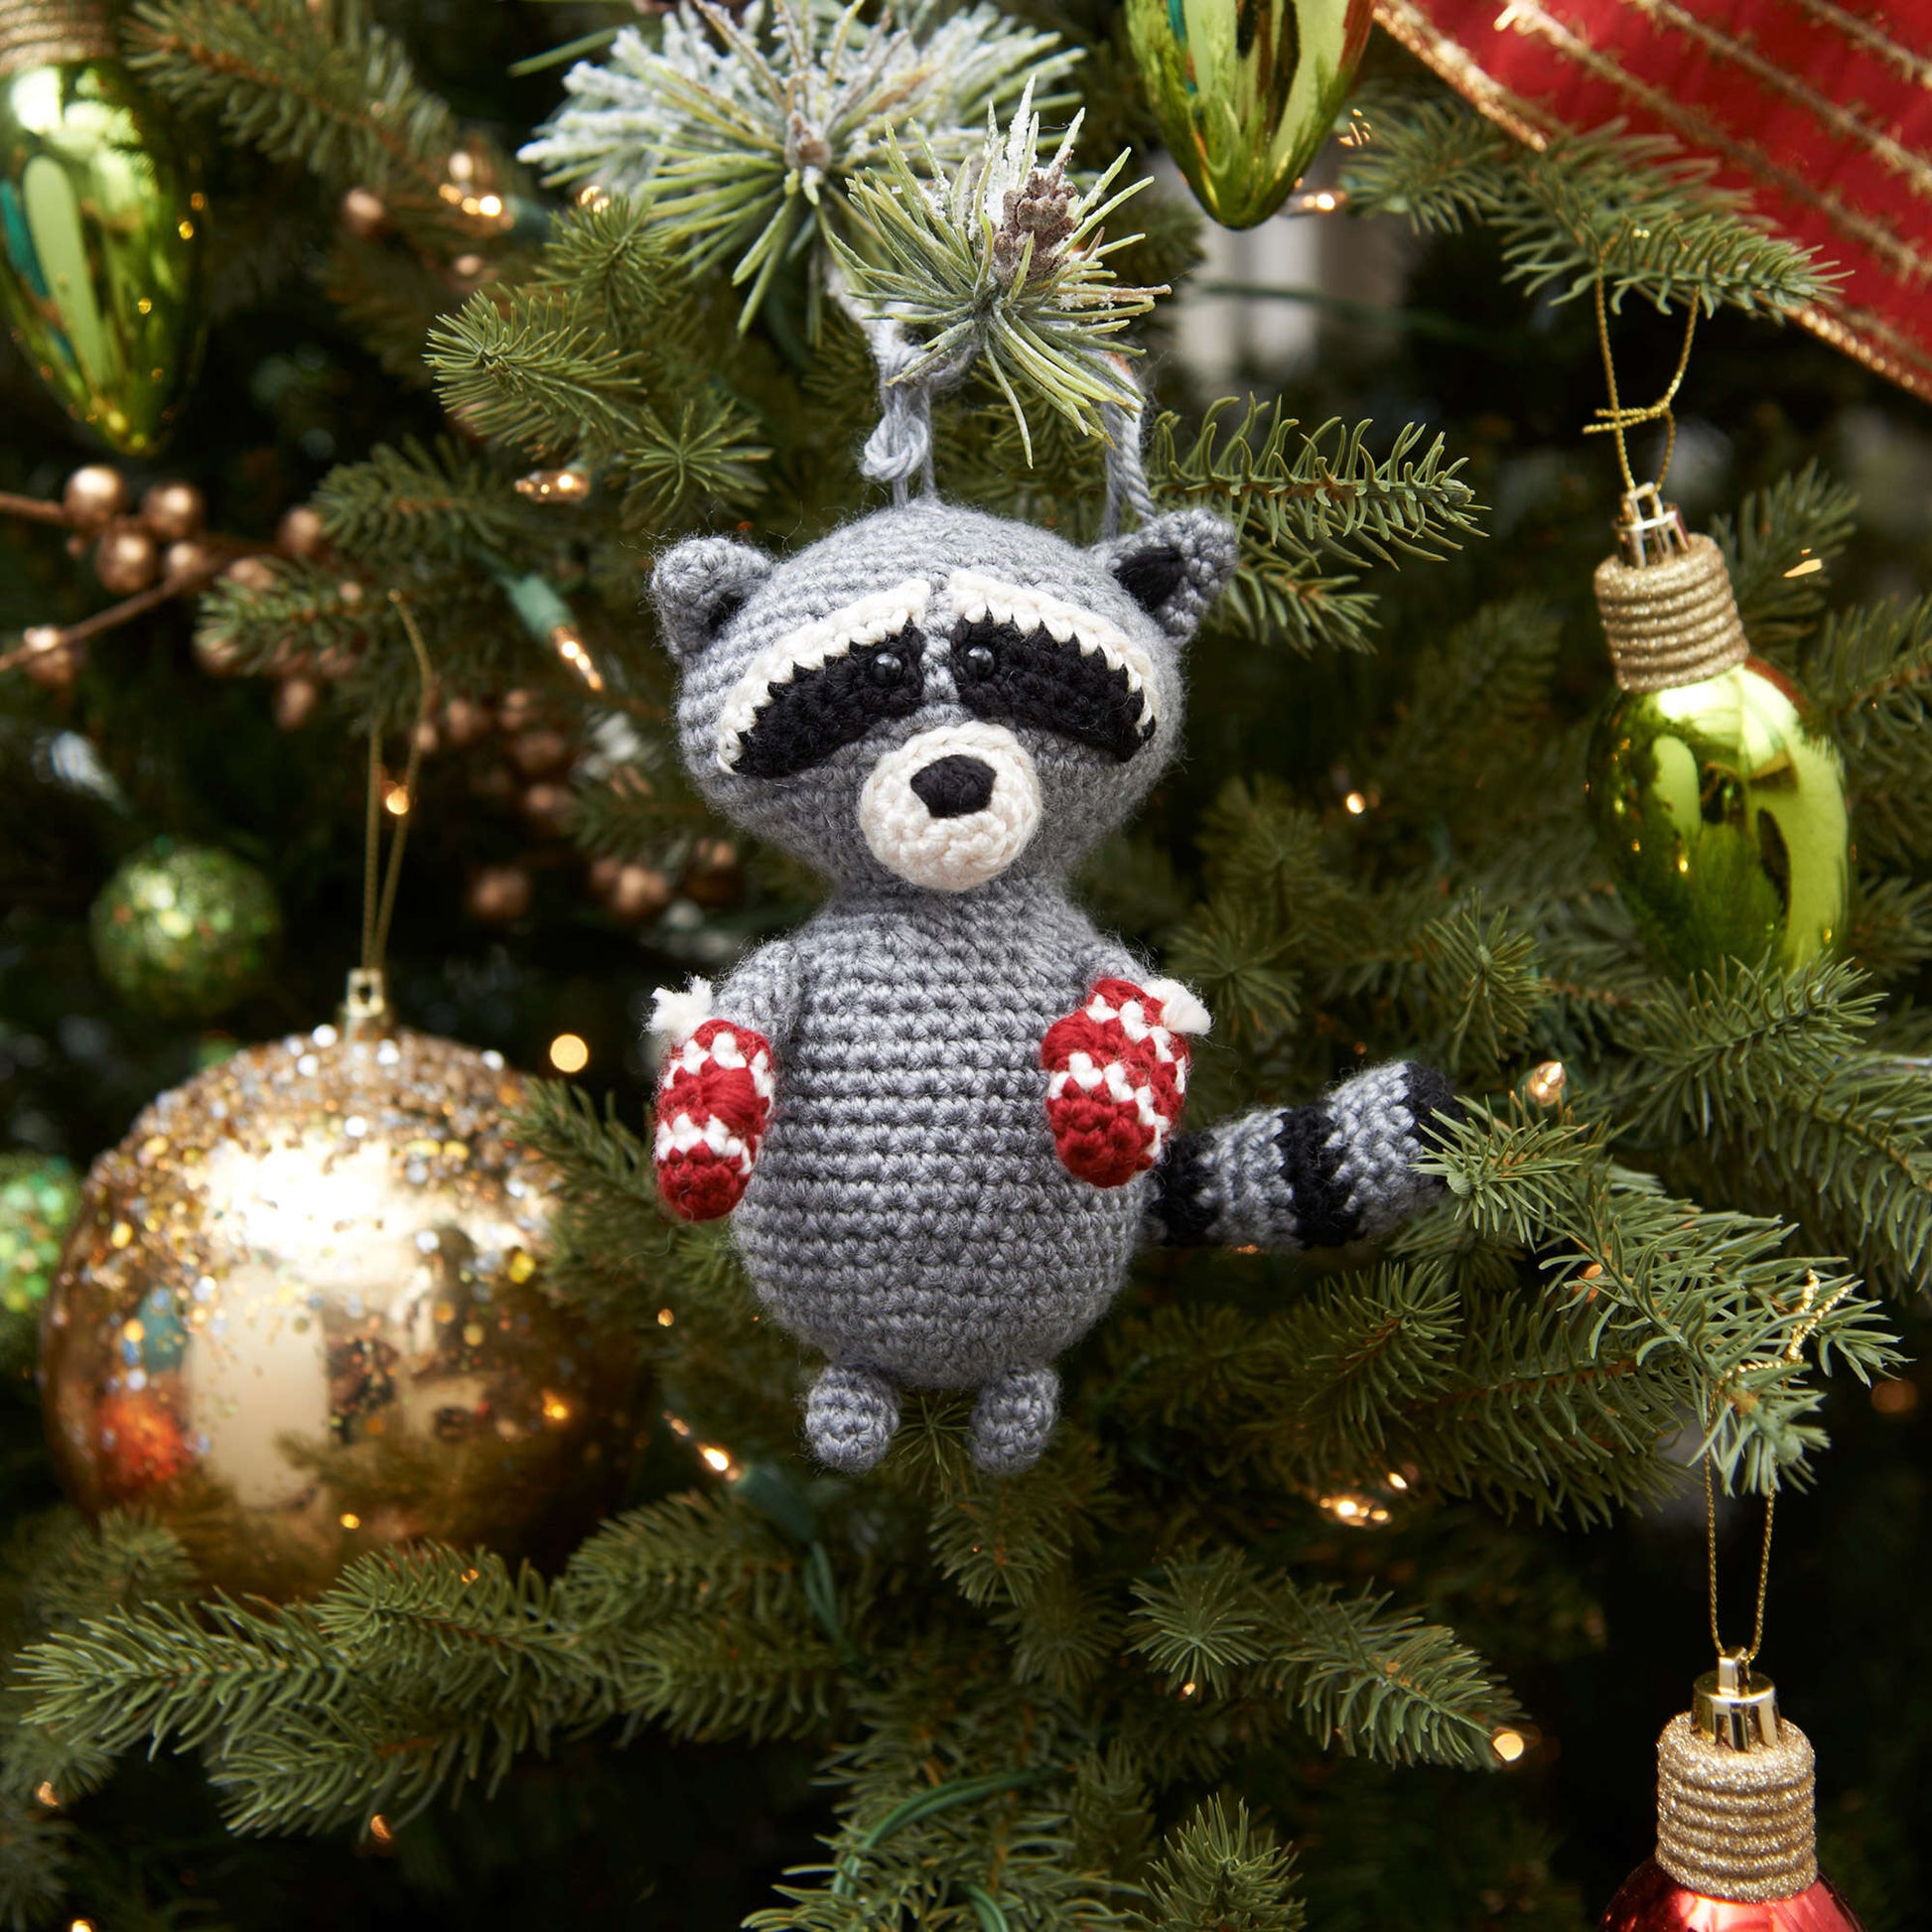 Free Red Heart Raccoon Ornament Crochet Pattern